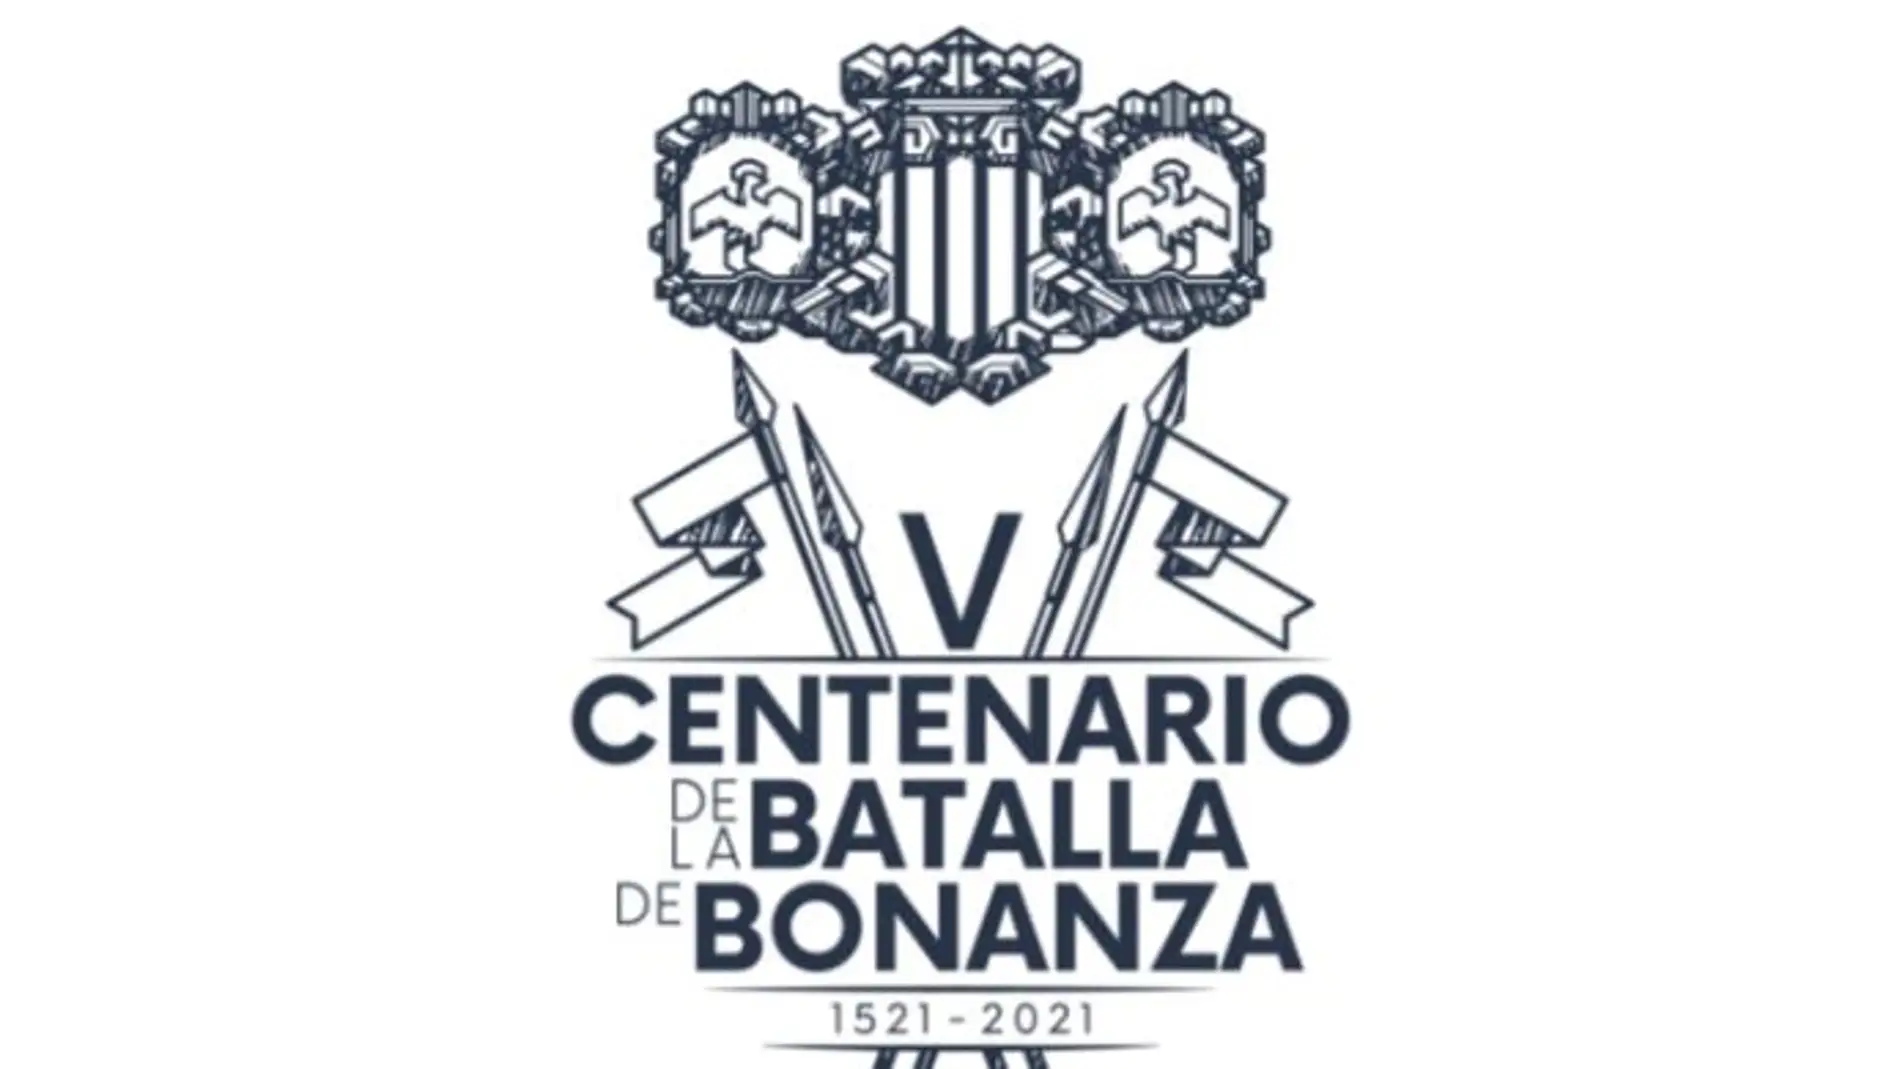 Historia, patrimonio y fiesta marcarán el programa de actividades del ‘V Centenario de la Batalla de Bonanza’ 